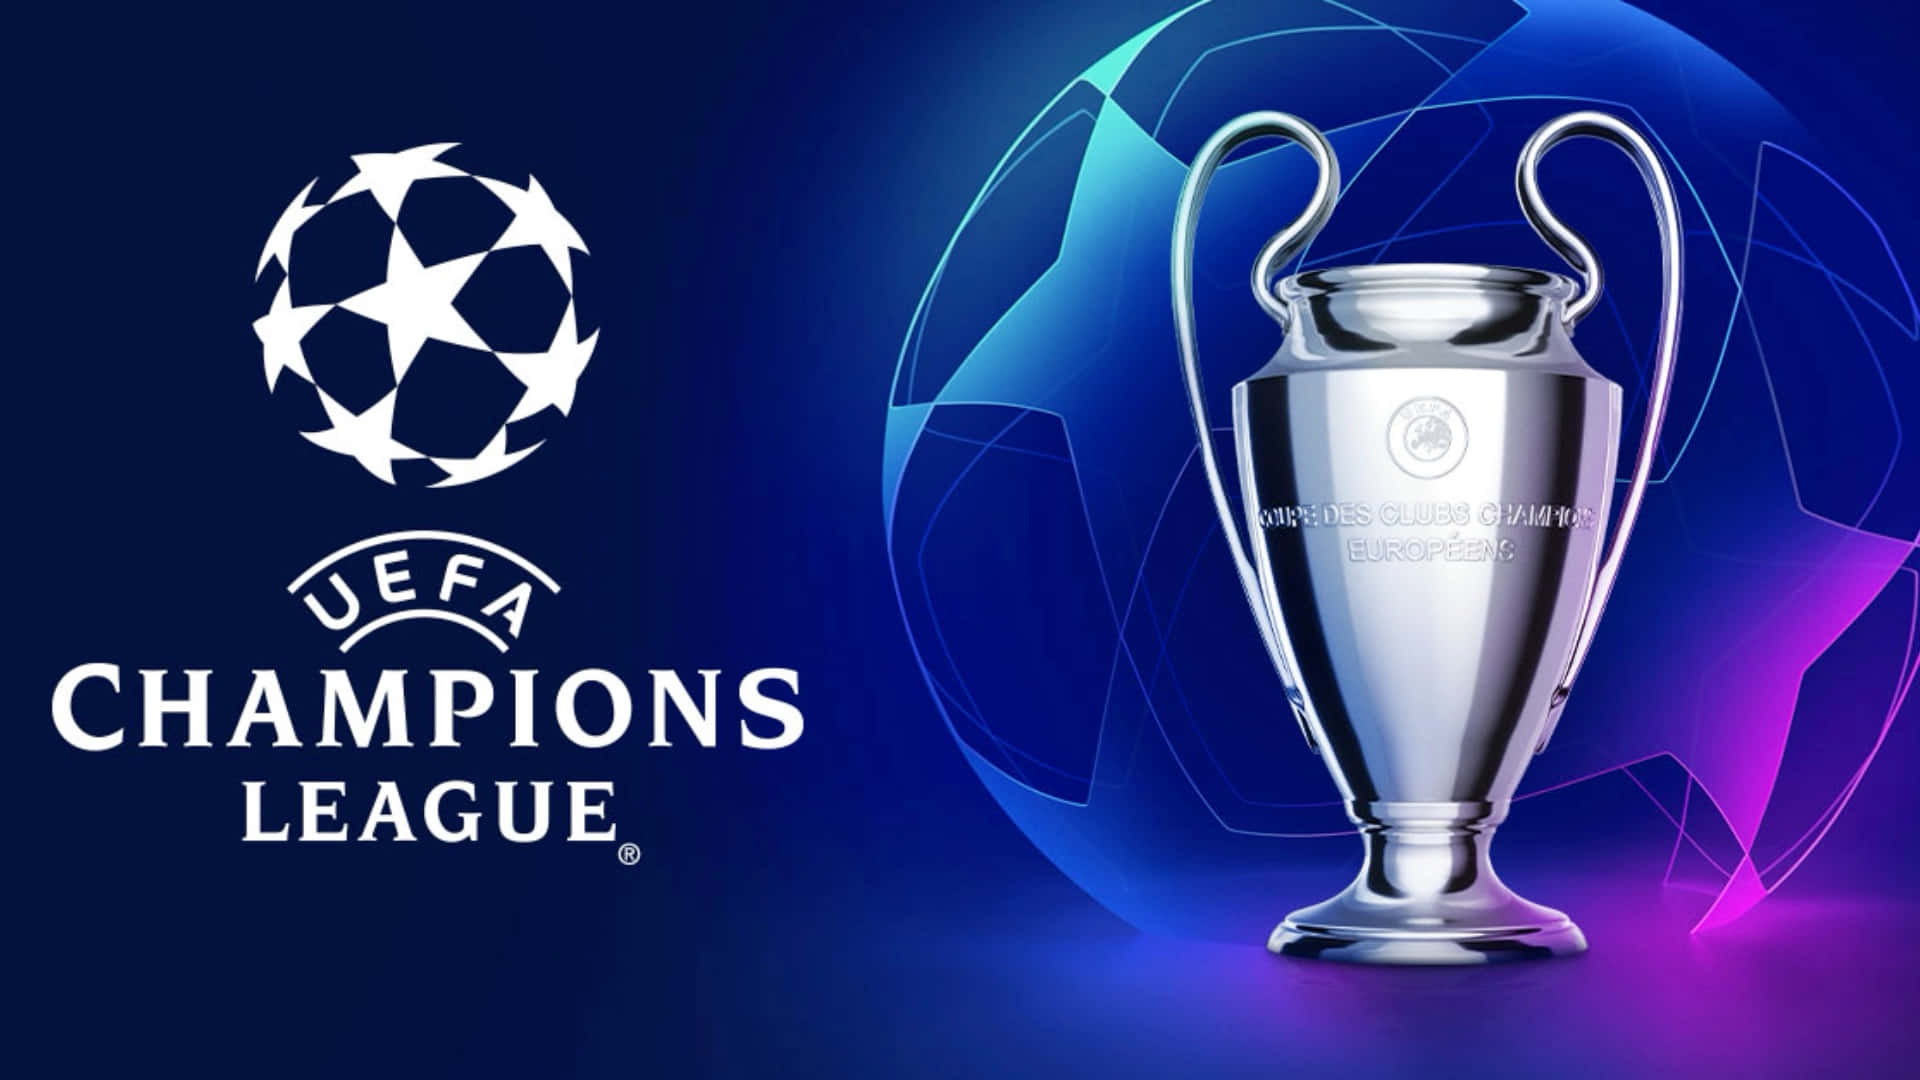 Squadreprovenienti Da Tutta Europa Si Sfidano Per Conquistare Il Premio Supremo Nella Uefa Champions League.